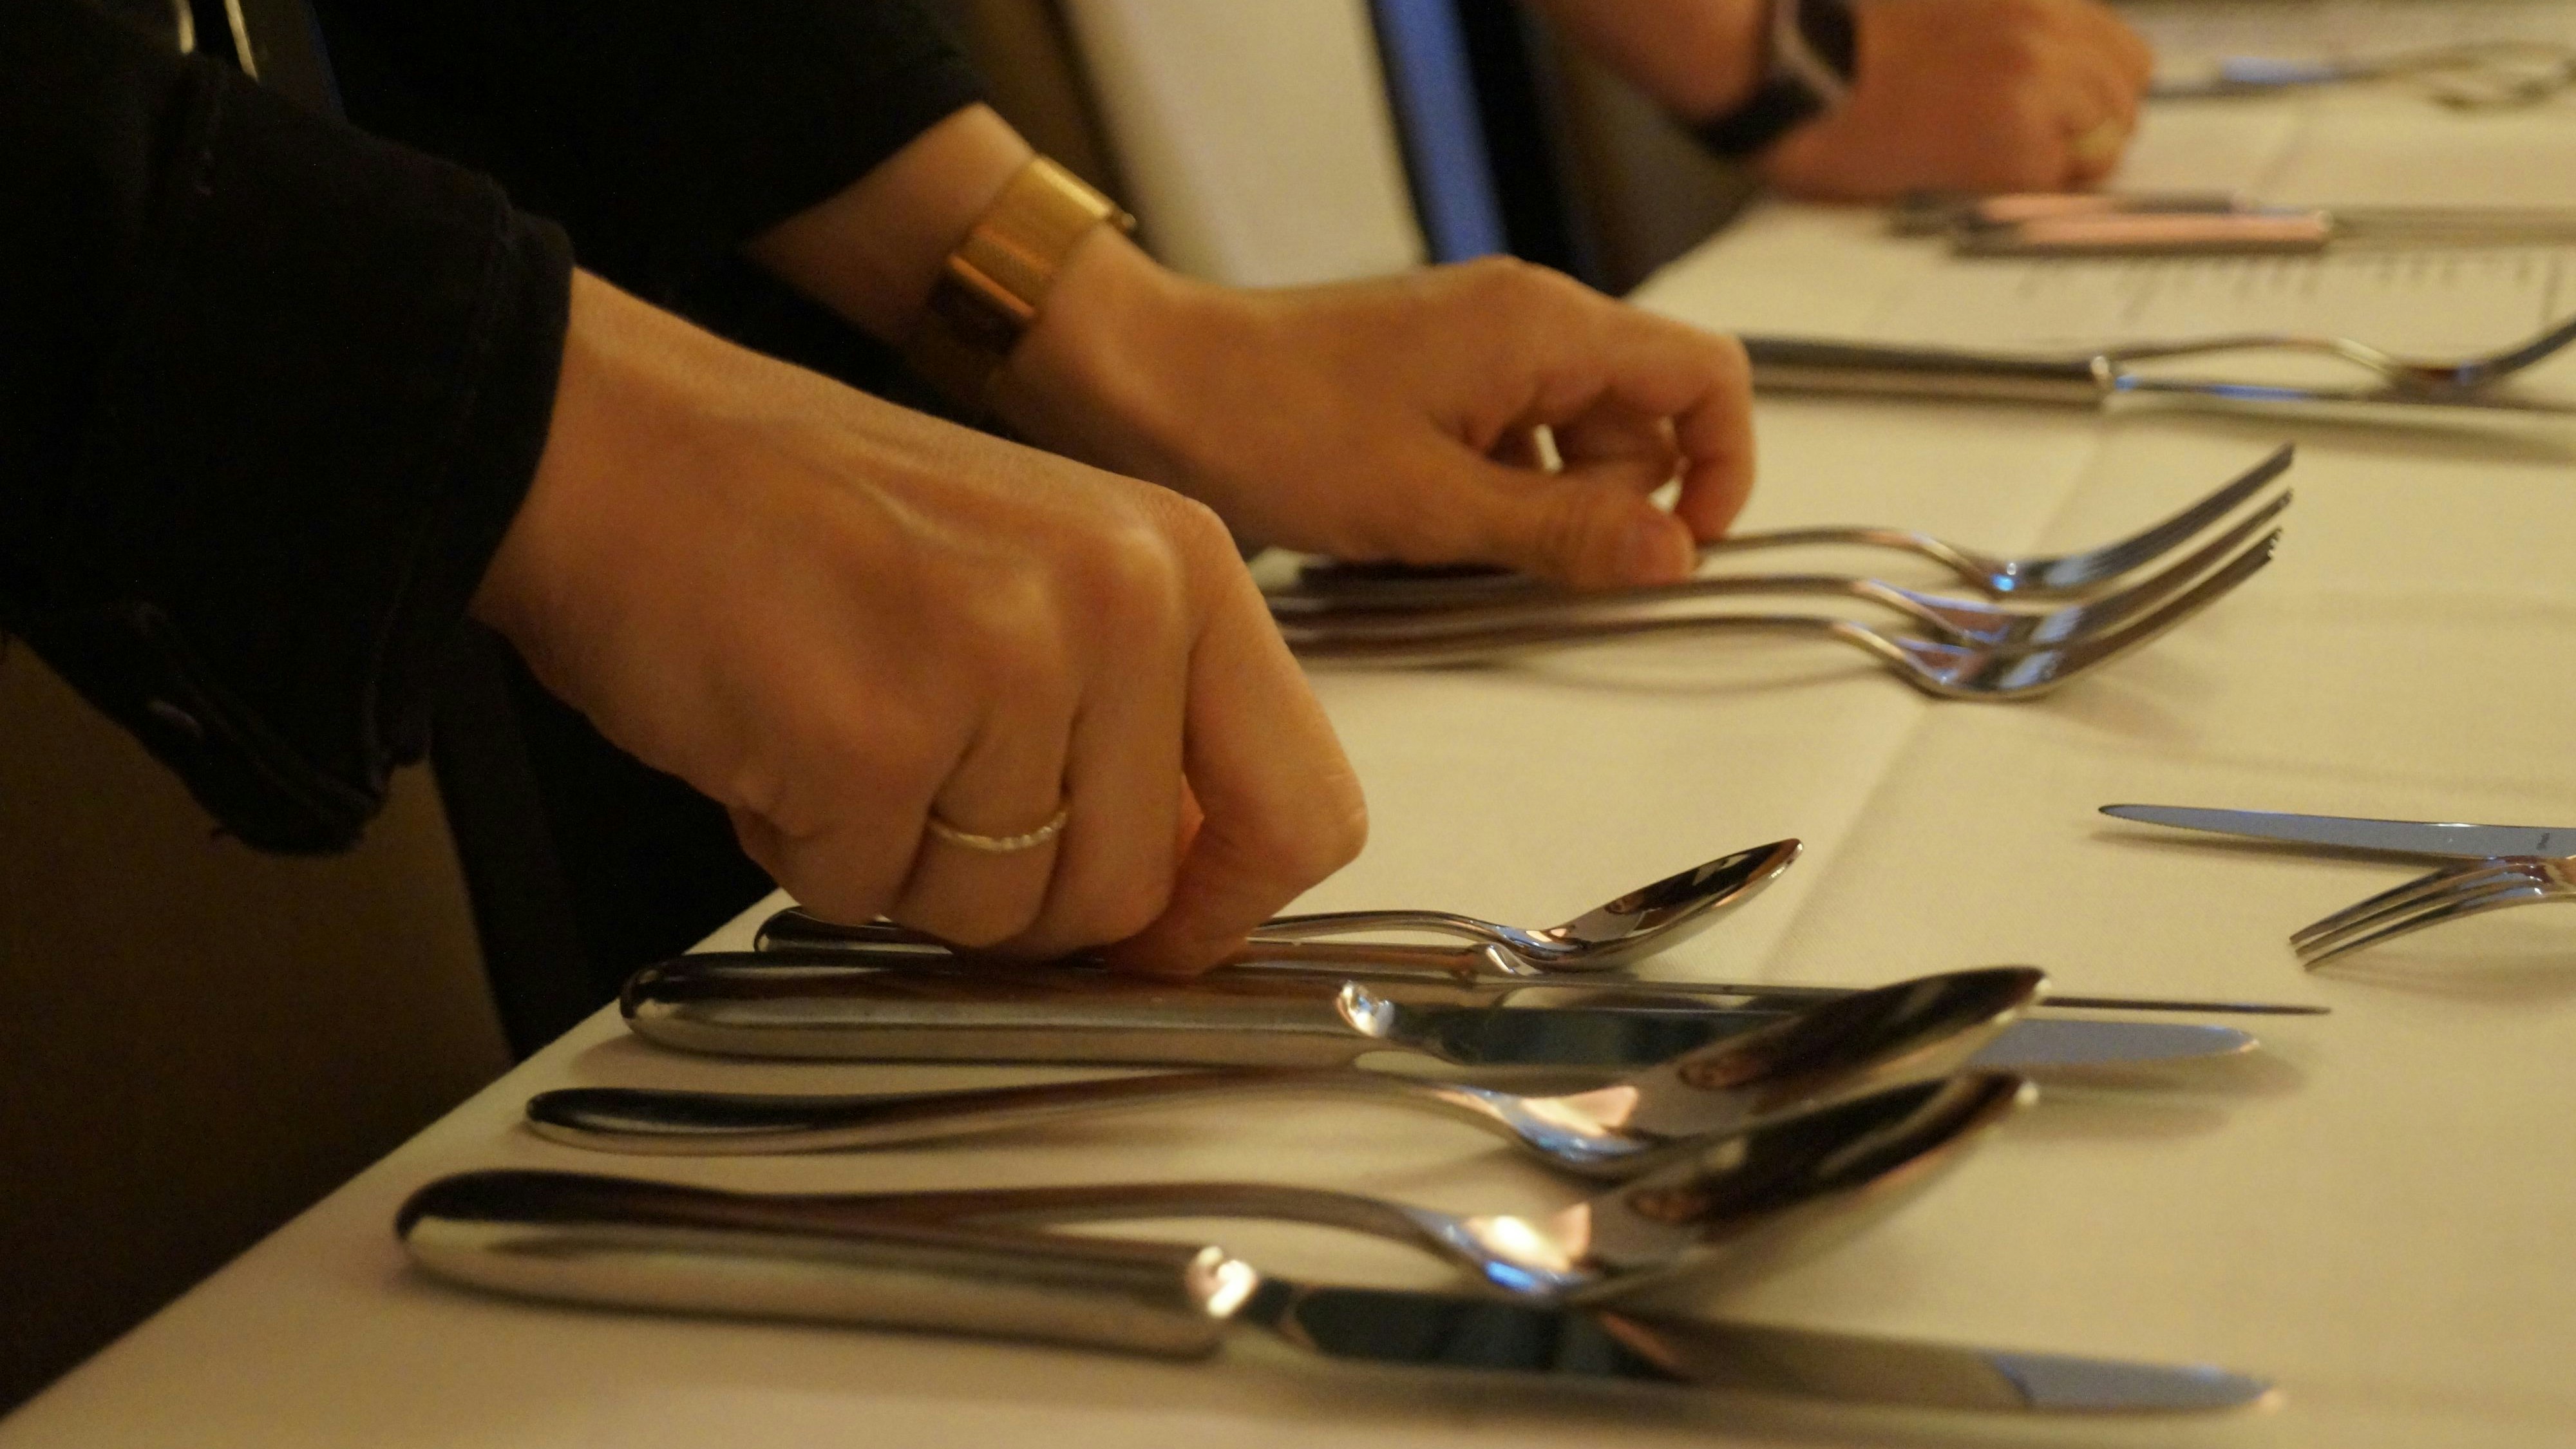 Liegen Messer und Gabel am richtigen Platz? Beim Knigge-Dinner lernten die Landfrauen, einen Tisch richtig einzudecken. Foto: C. Meyer